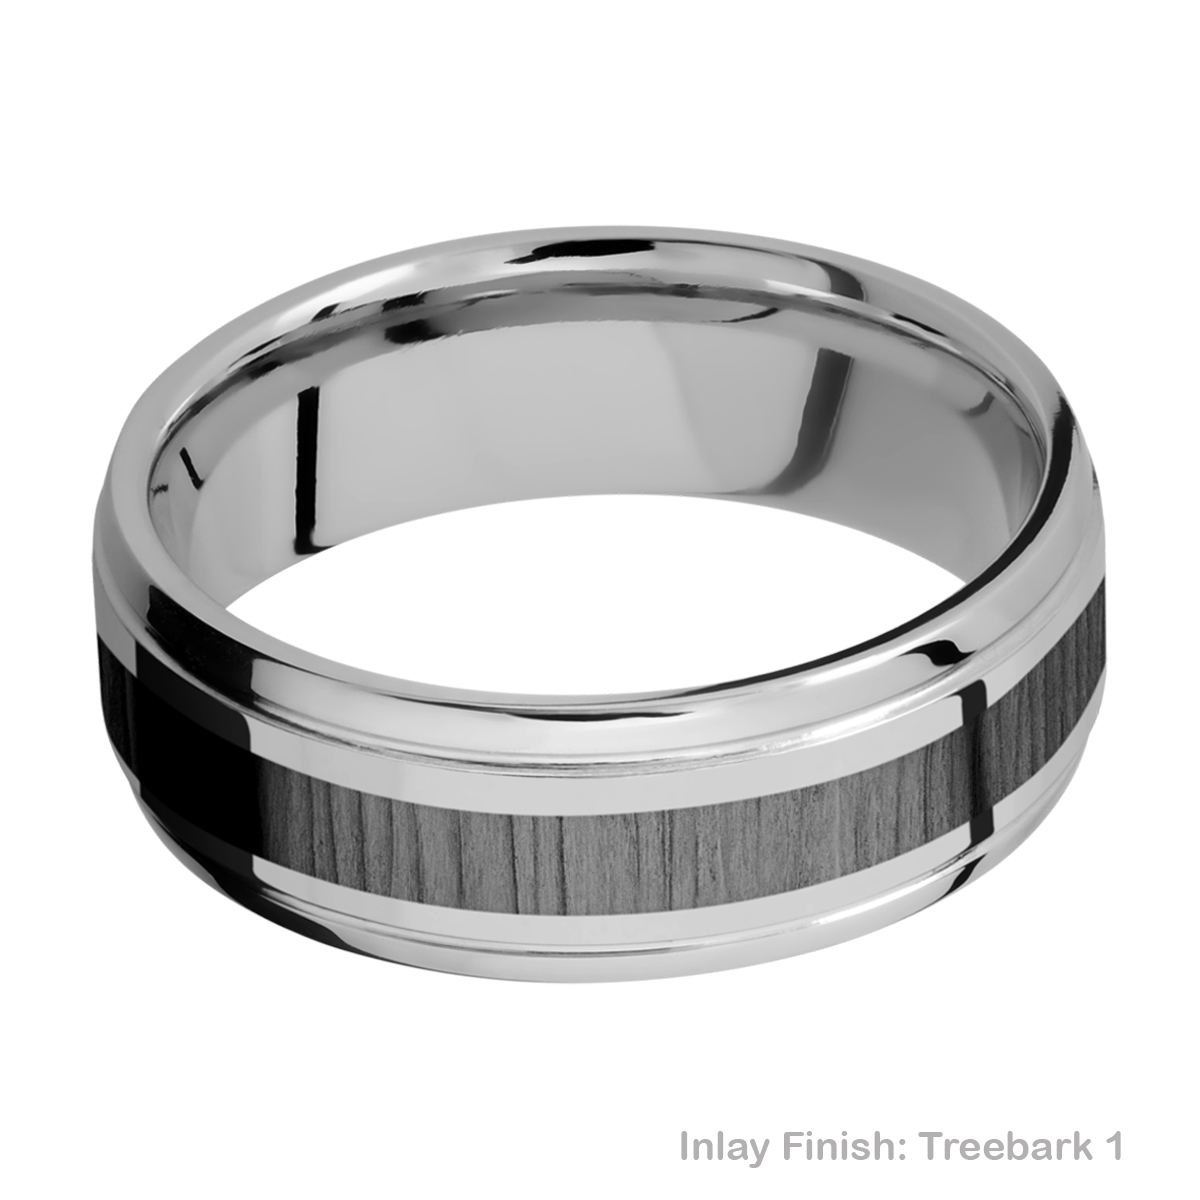 Lashbrook PF7B13(S)/ZIRCONIUM Titanium Wedding Ring or Band